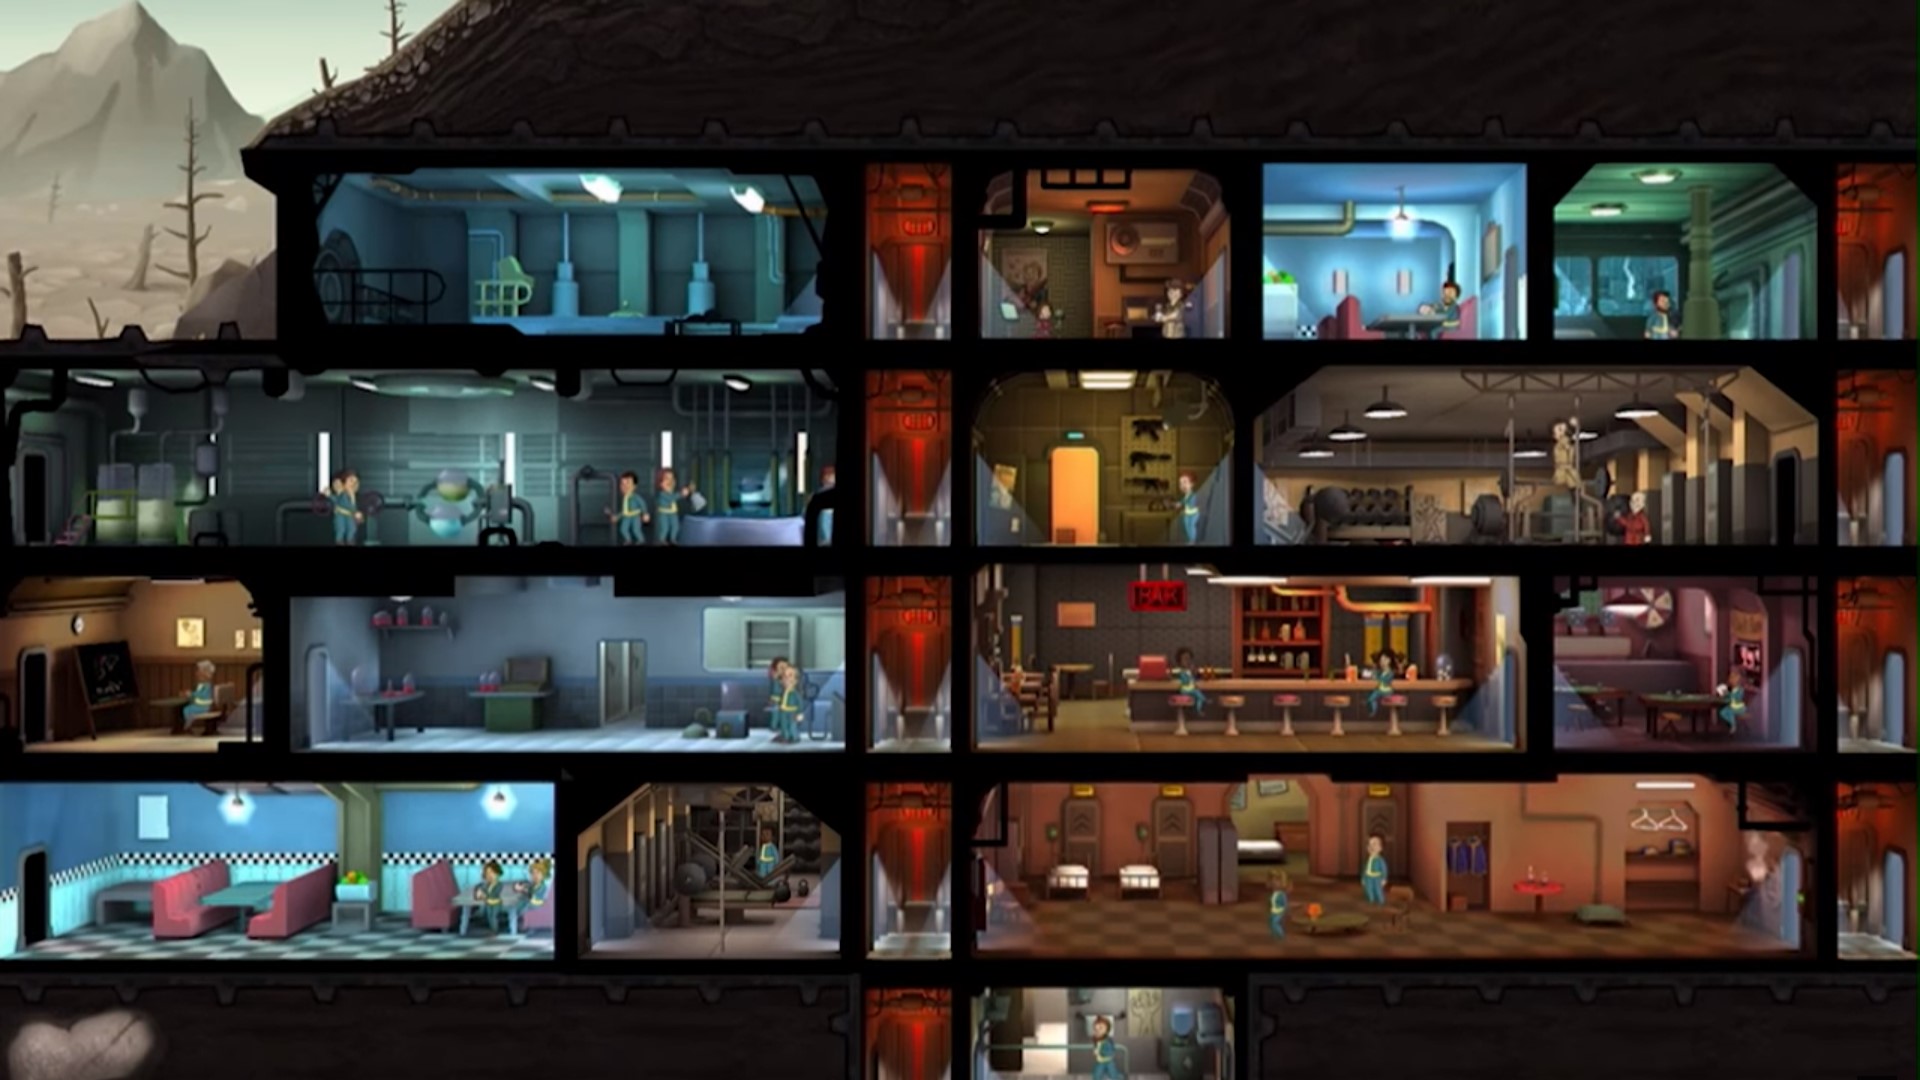 Beste mobile strategispill: Fallout Shelter. Bildet viser et nedfallshus med mange rom og mennesker inni det